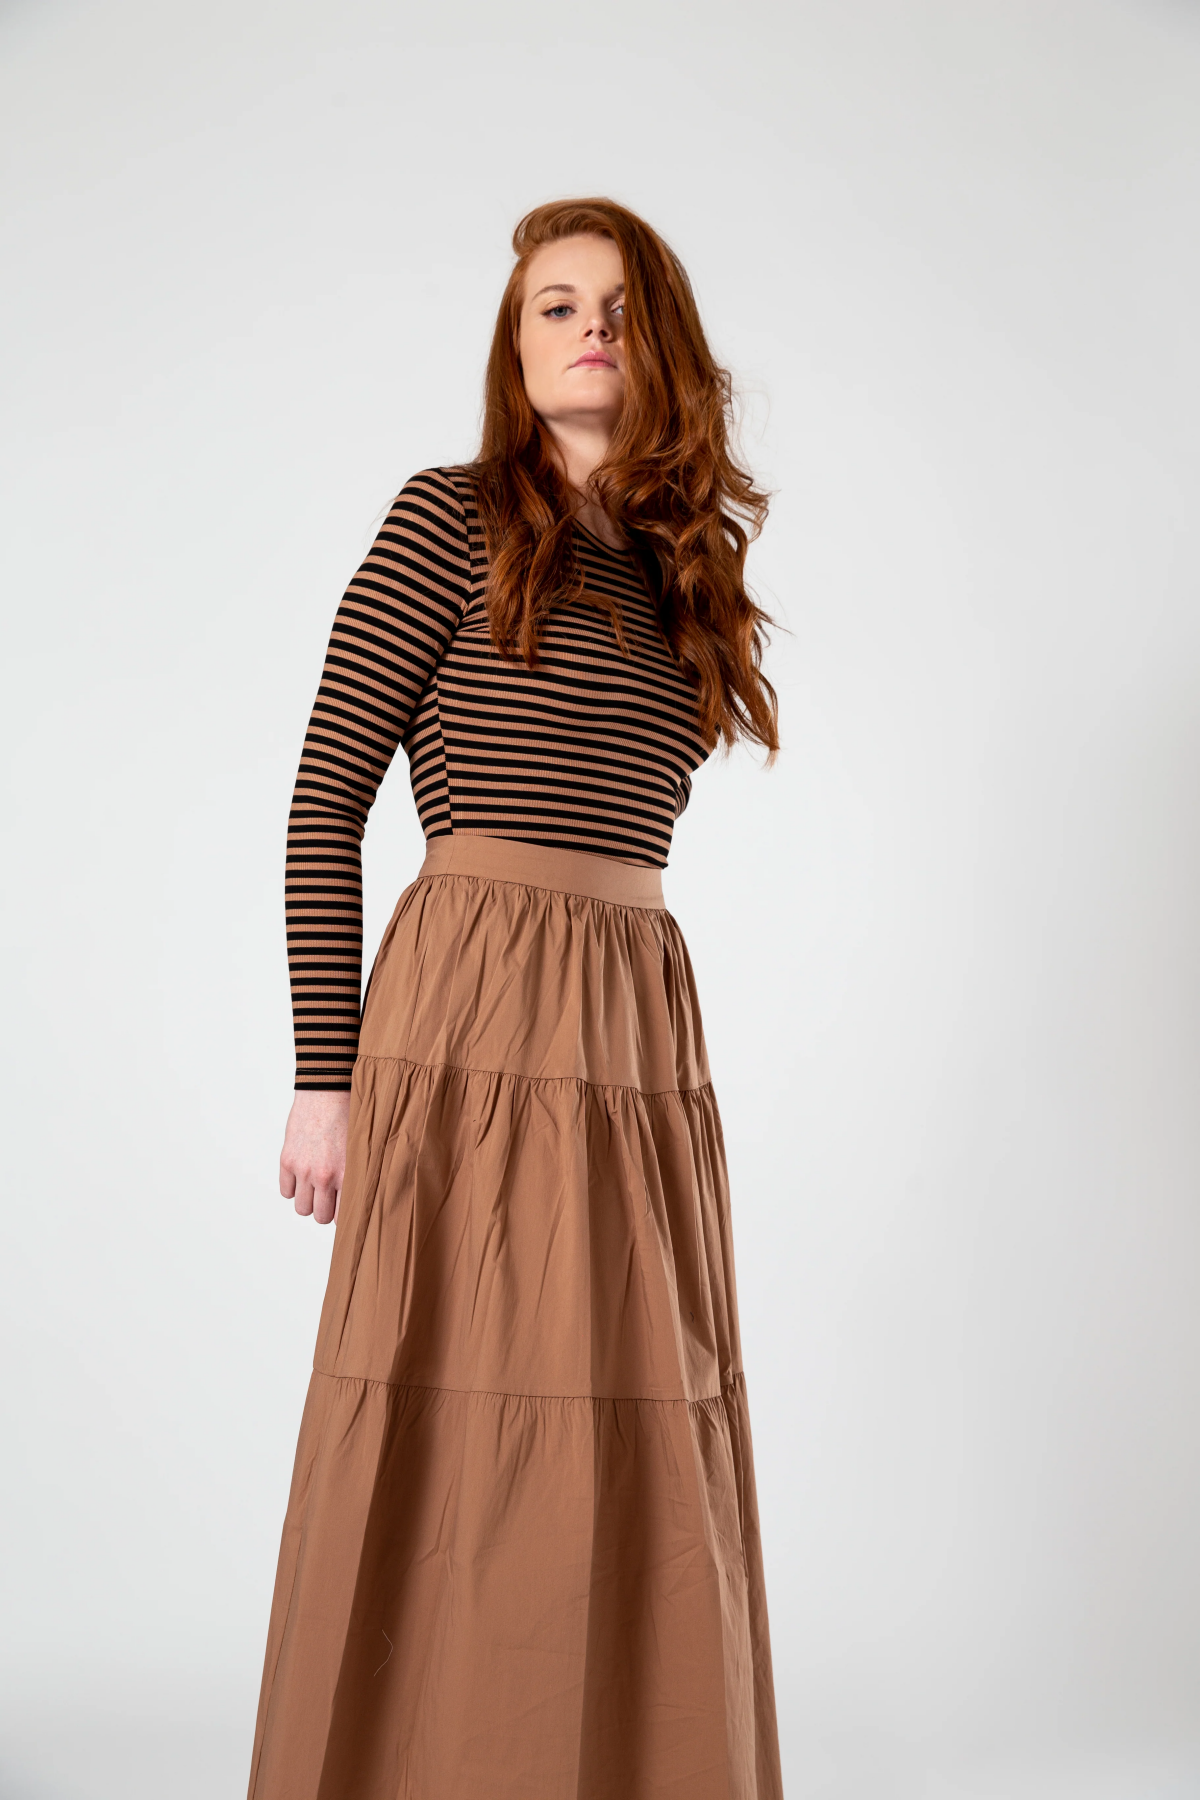 brown peasant skirt